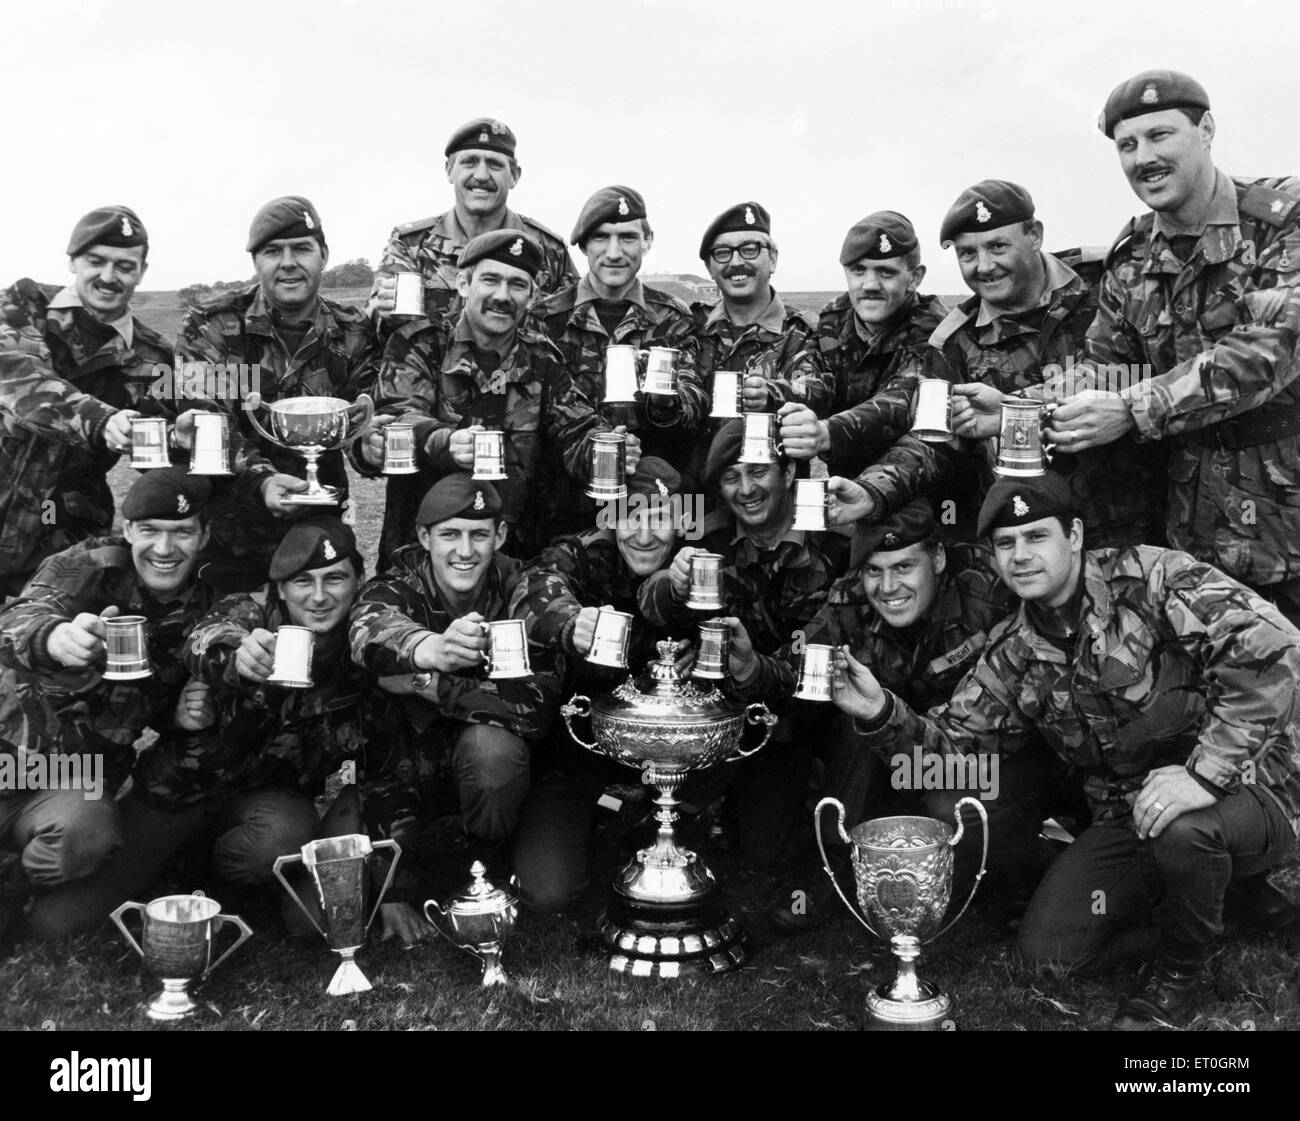 Hotshots de Yorkshire fueron las estrellas de una reciente competición de tiro. Los miembros del primer batallón de voluntarios de Yorkshire ganó una impresionante selección de trofeos en el distrito nororiental conjunta y Yorkshire voluntarios armas sartén celebrada en Catterick ruge. El 7 de agosto de 1990. Foto de stock